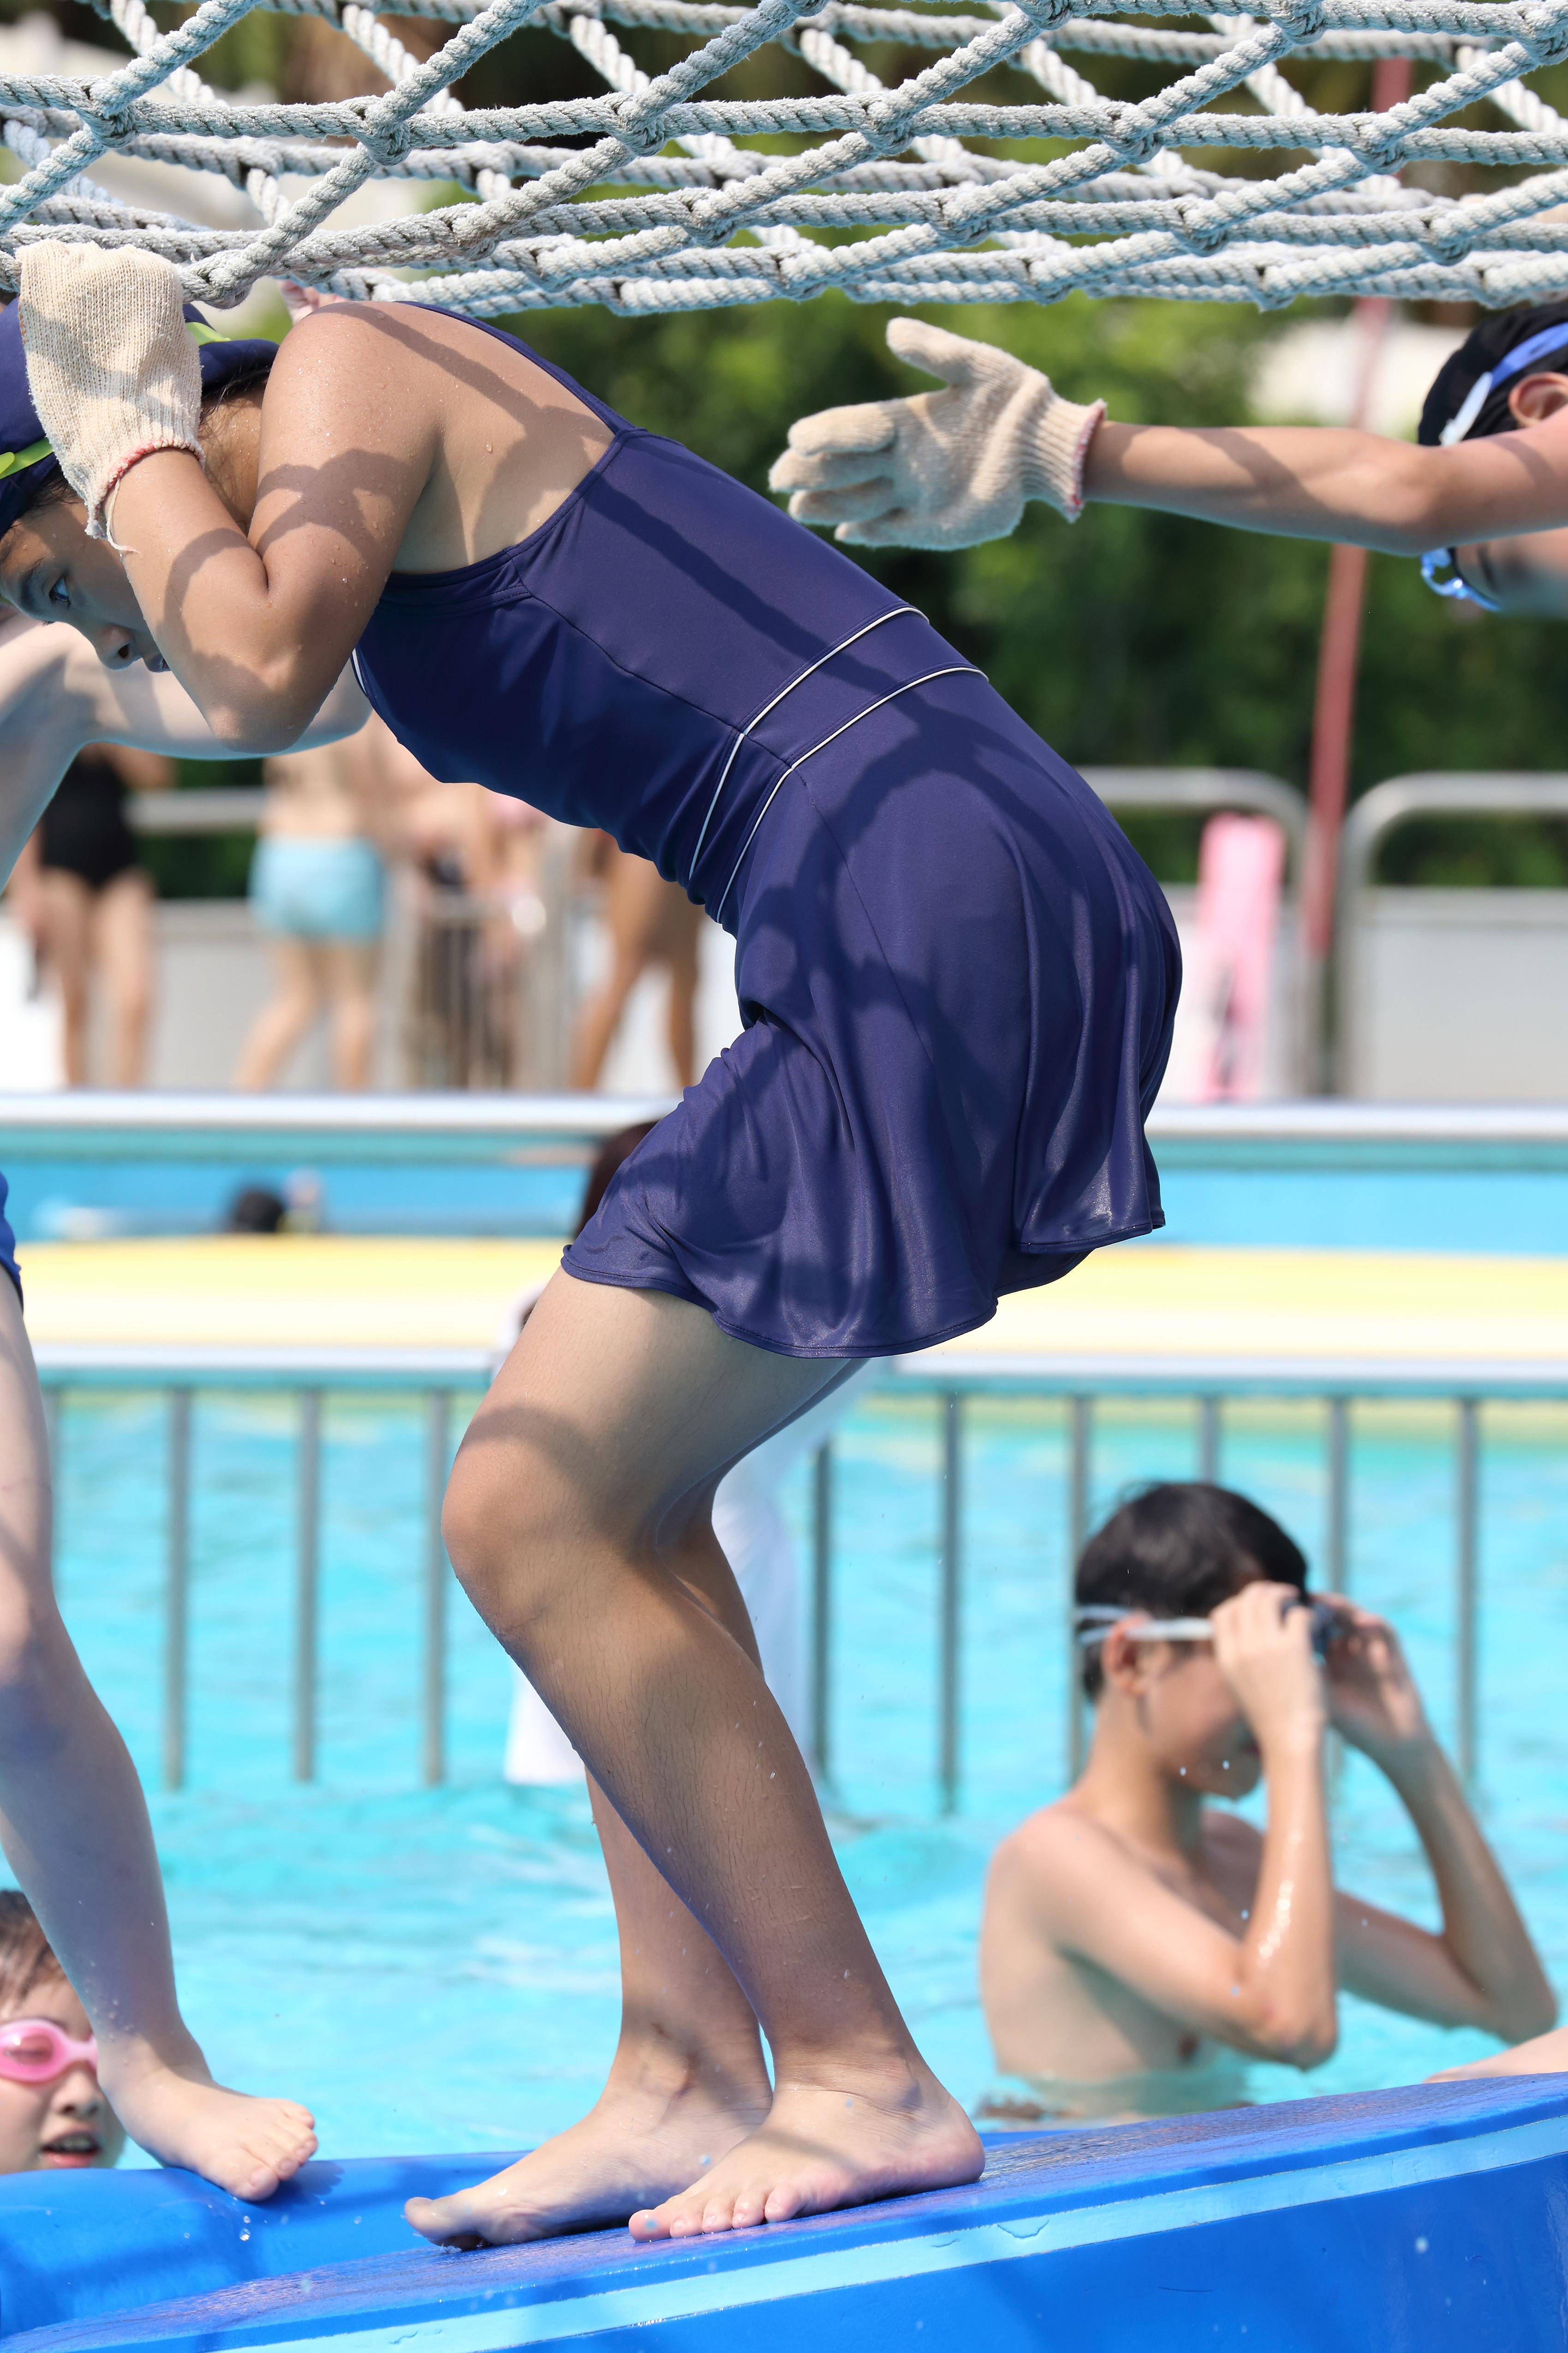 SWIM_26 JK Swimsuit image ap20, [Photo] Hochbeiniger Badeanzug Vol.1, der sich an schlanken Beinen und faszinierenden Hüften schmiegt 232 hochwertige Bilder!